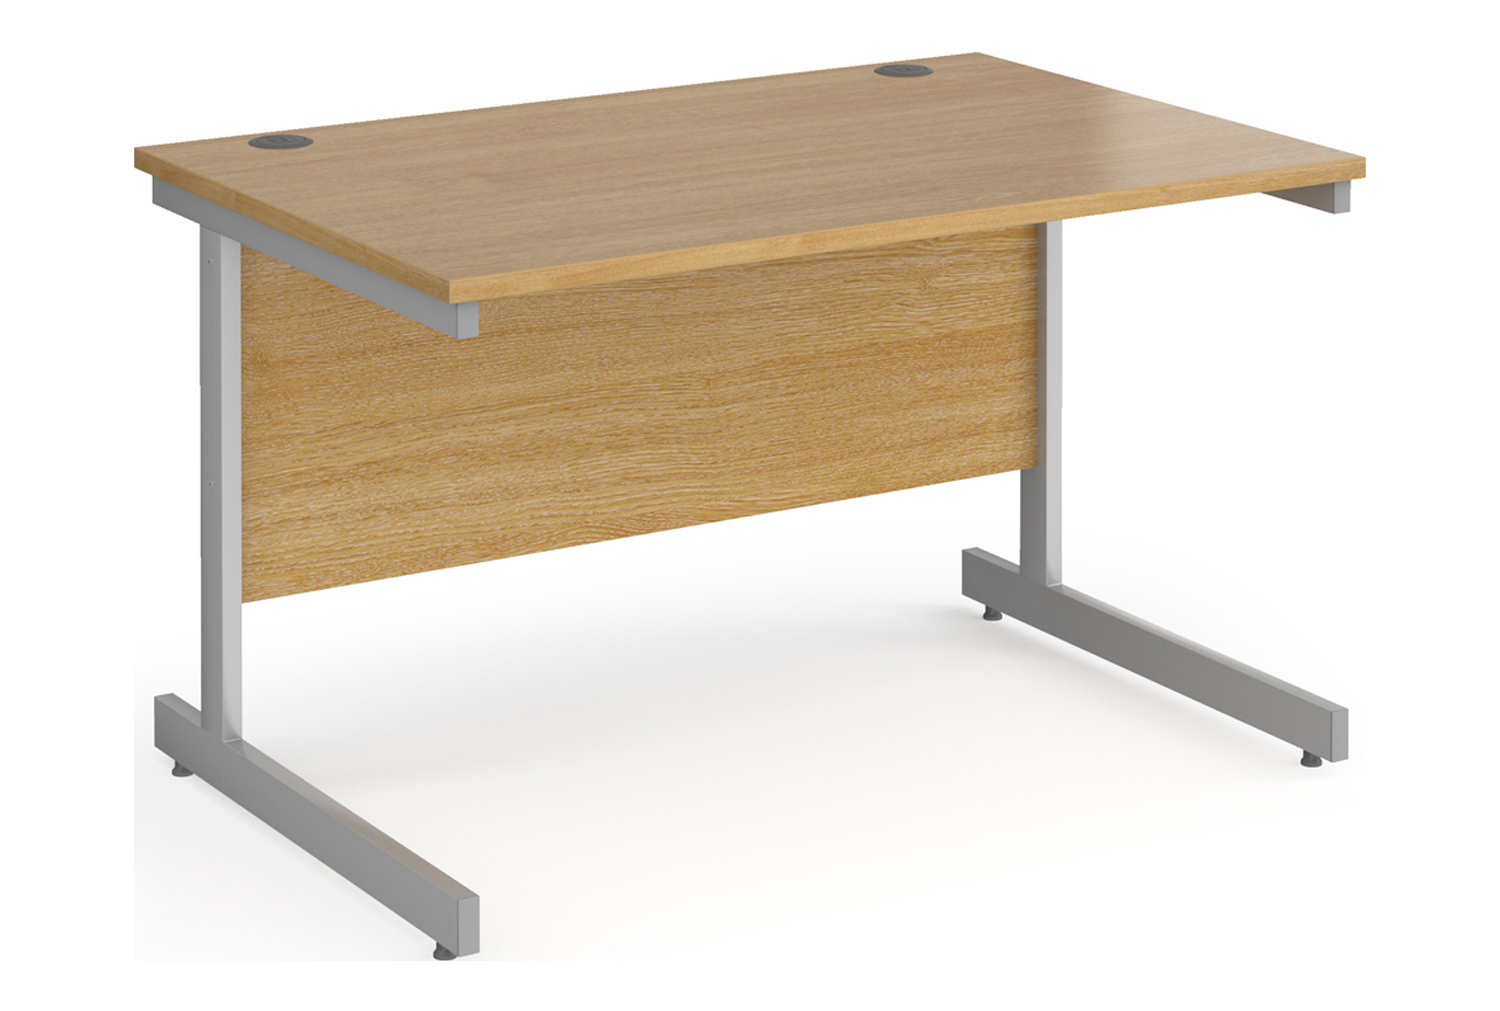 Value Line Classic+ Rectangular C-Leg Office Desk (Silver Leg), 120wx80dx73h (cm), Oak